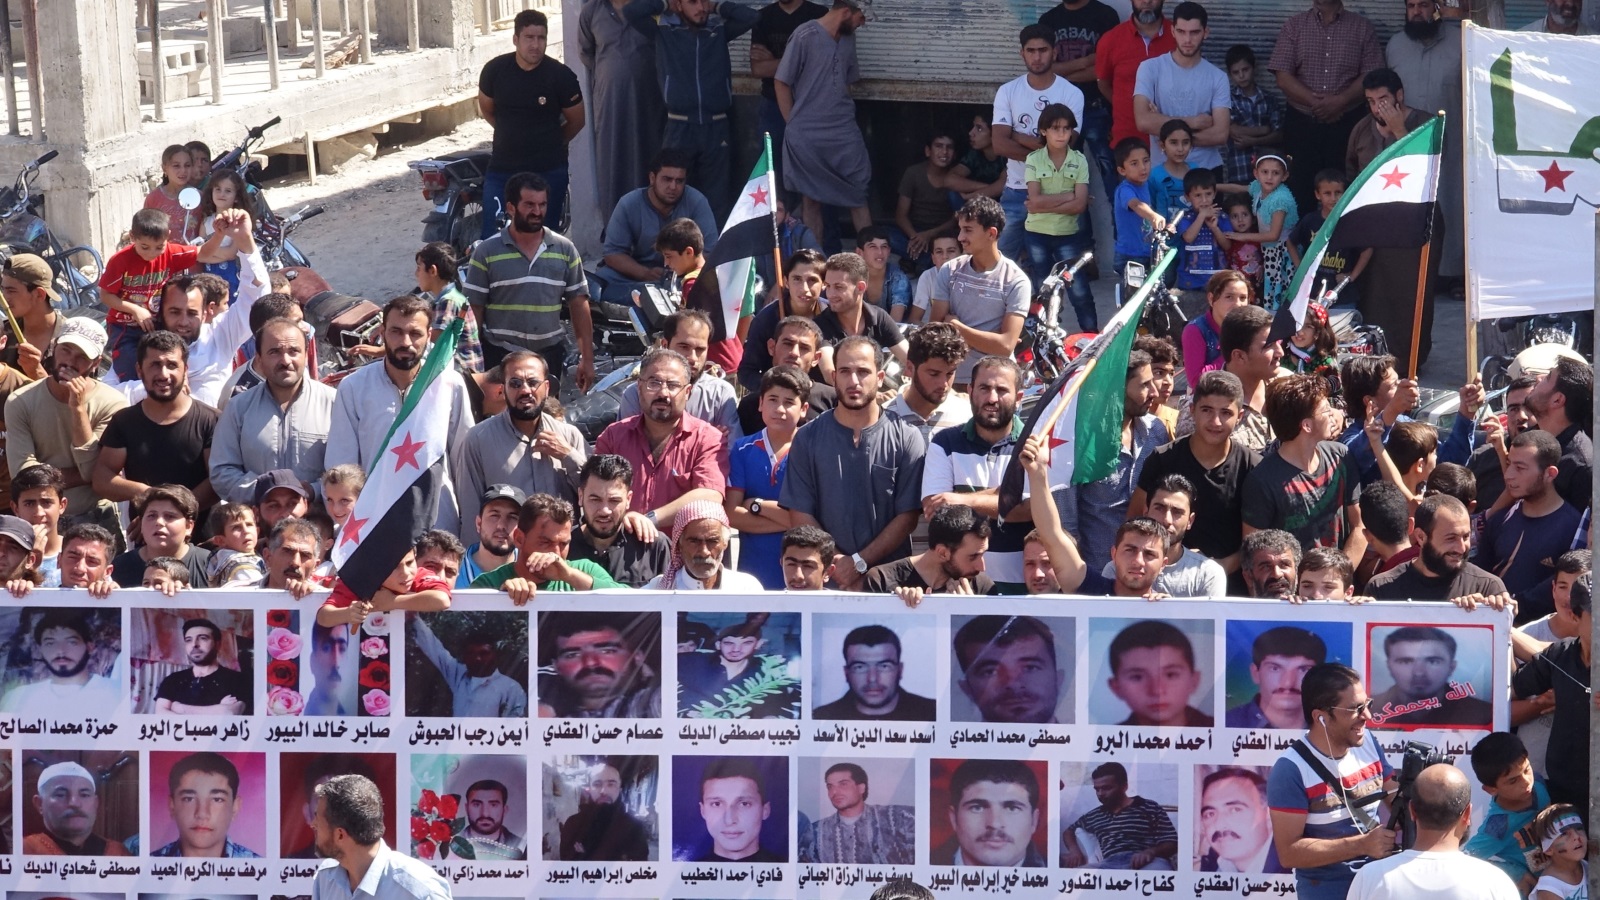 ‪مظاهرة في إدلب ترفع لافتات تضم صور العديد من المعتقلين المغيبين في سجون النظام السوري‬ (الأناضول)